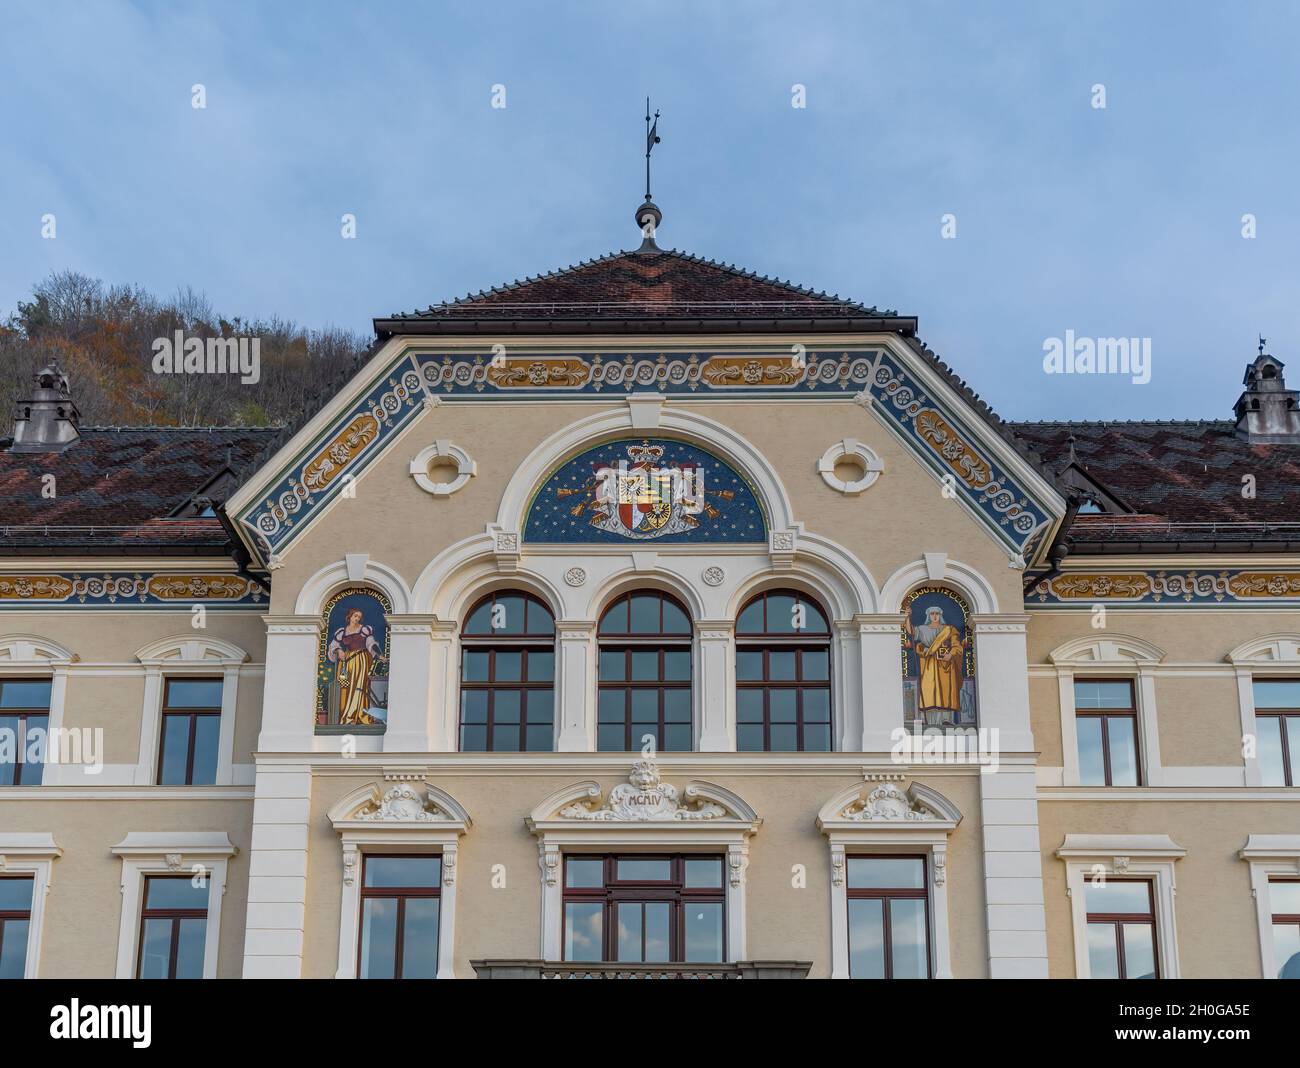 Regierungsgebäude von Liechtenstein (Regierungsgebäude) - Regierungsgebäude des Fürstentums Liechtenstein Stockfoto